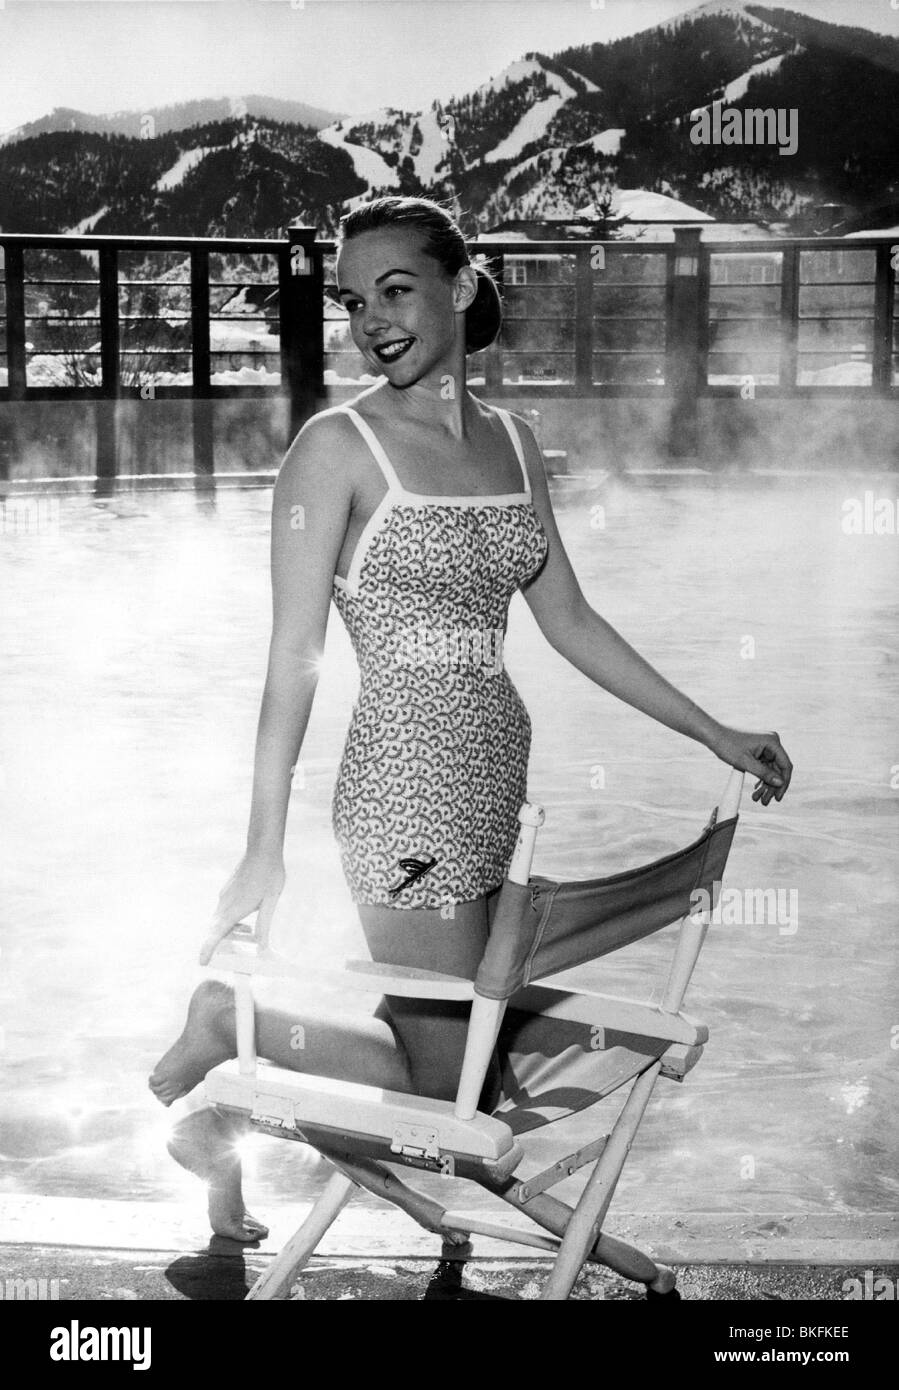 imán Alta exposición Barry Moda, 50 años, moda femenina, ropa de playa, mujer que lleva traje de baño,  arrodillándose en la silla del director, Sun Valley, Idaho, 1956 Fotografía  de stock - Alamy